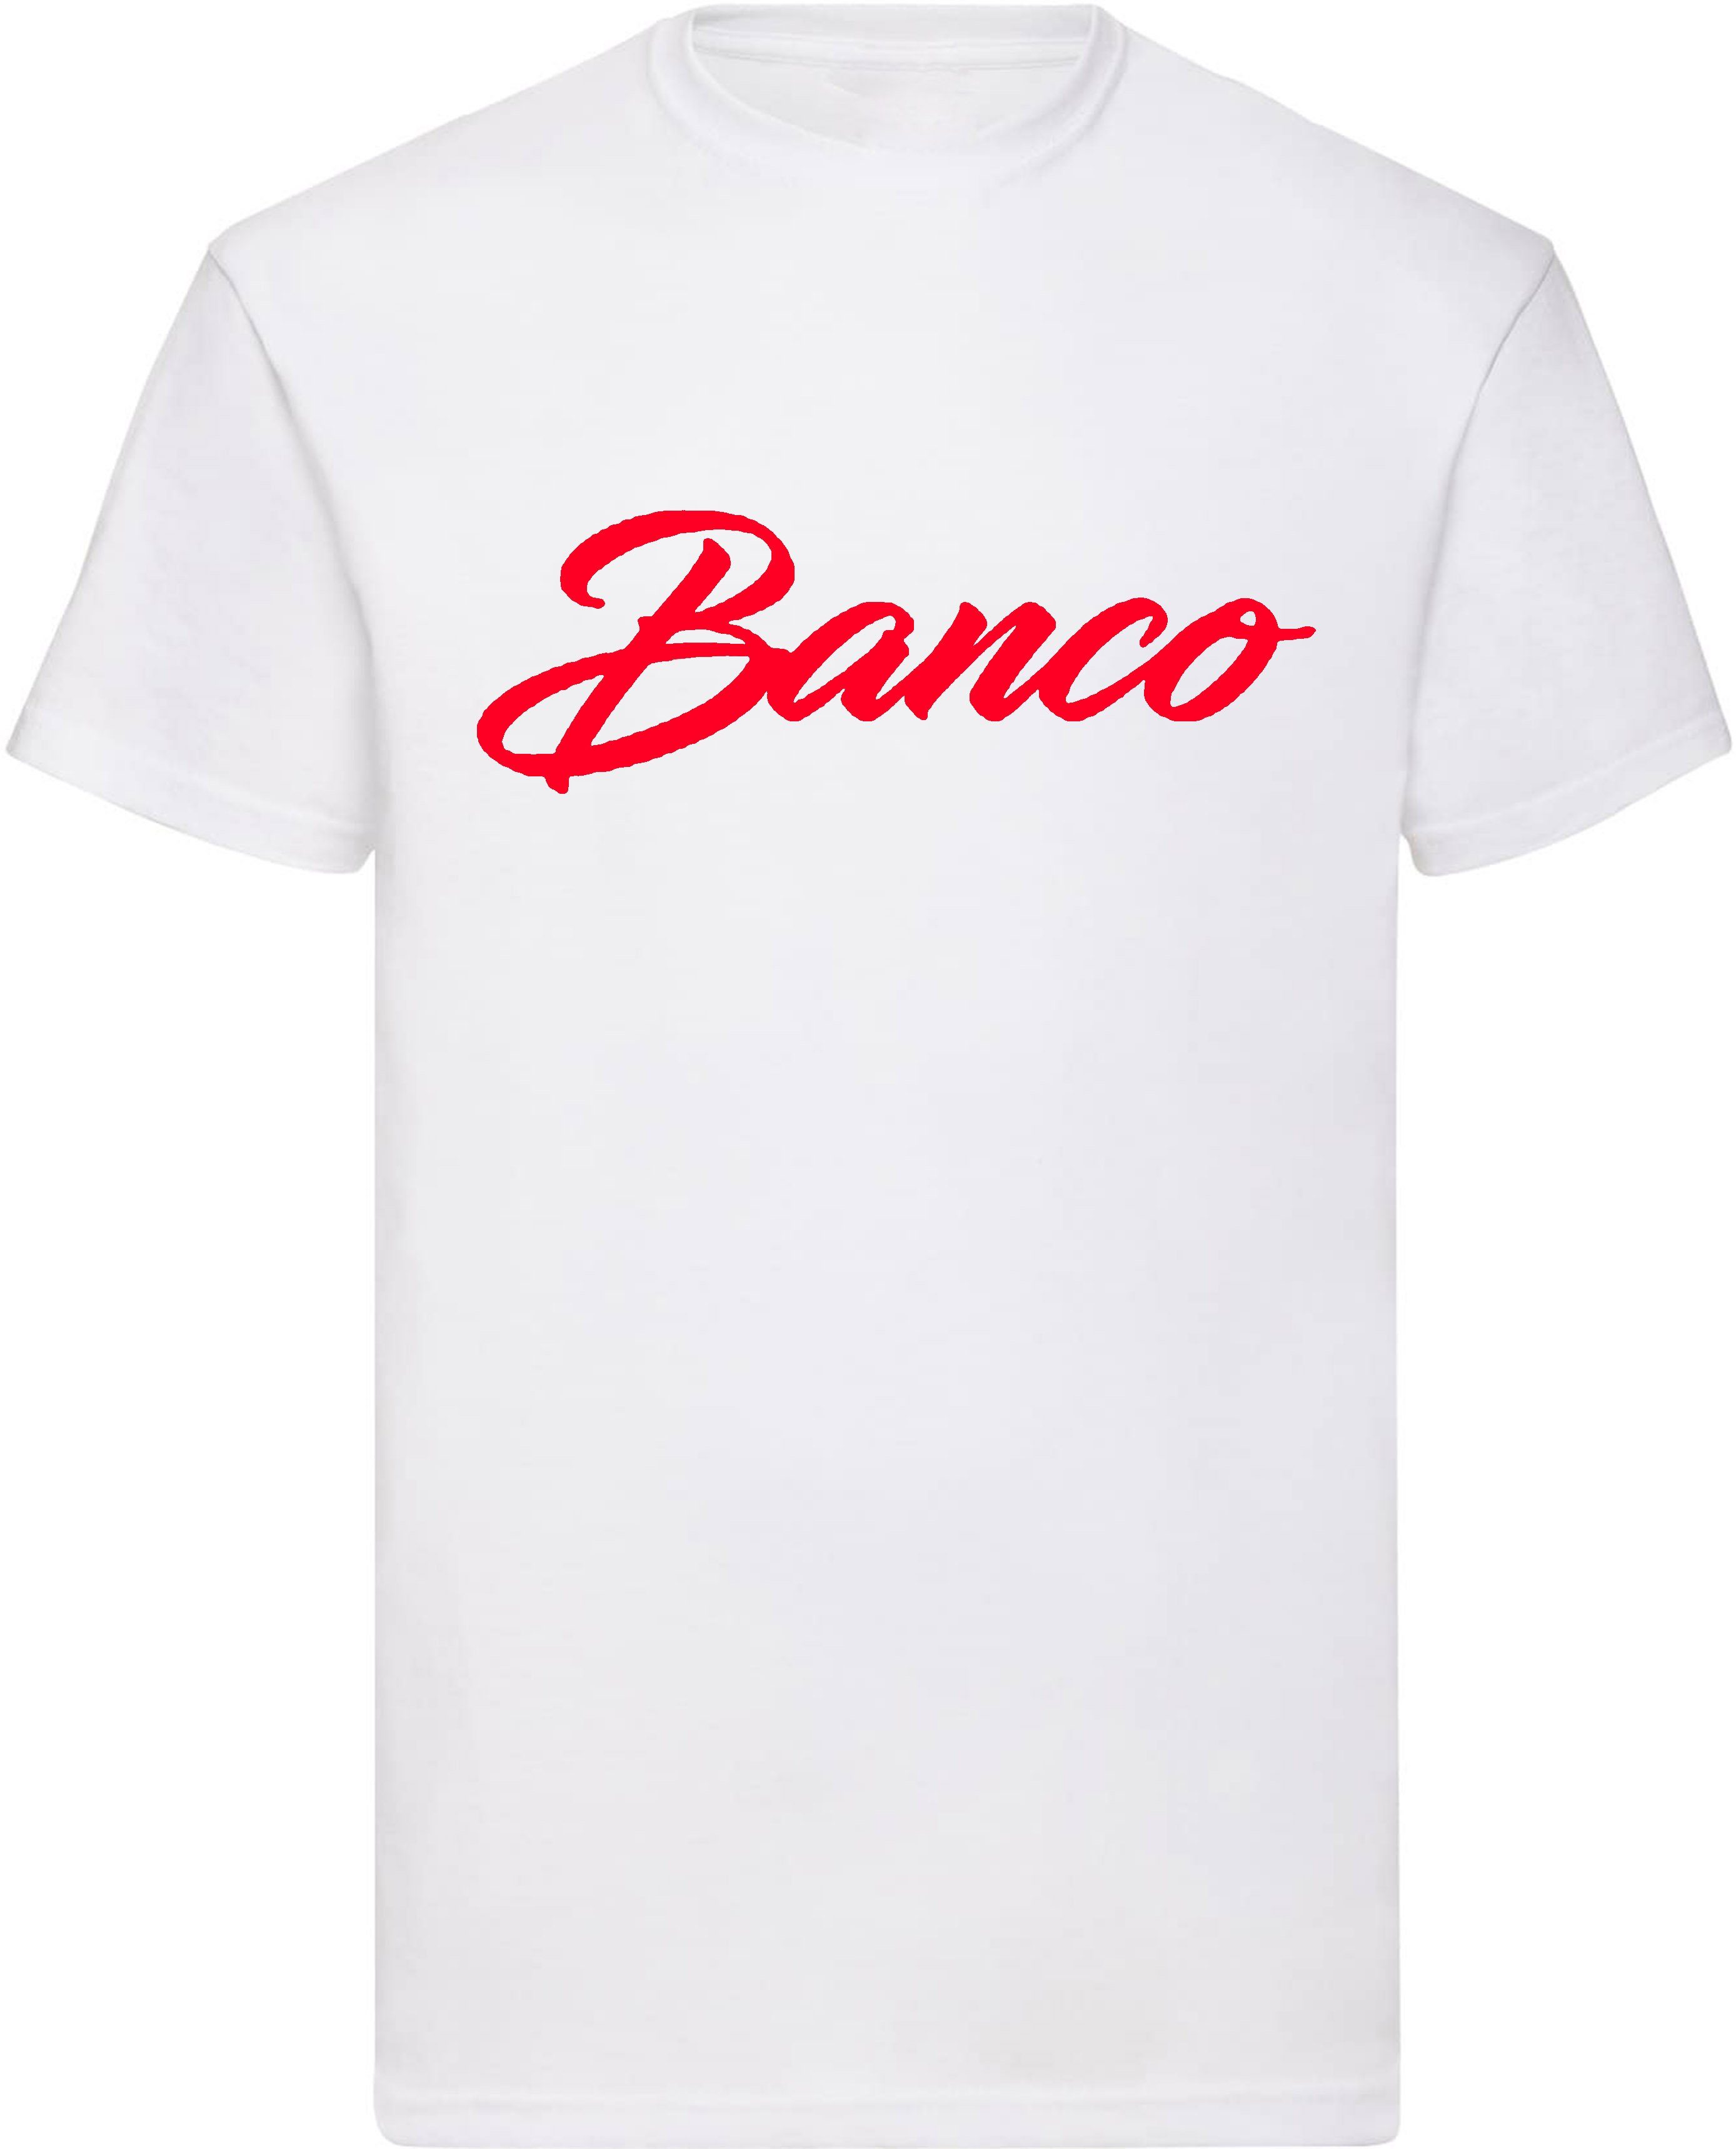 Banco T-Shirt Kurzarm 100% Baumwolle Rundhals Shirt Sommer Sport Freizeit Streetwear WeißRot